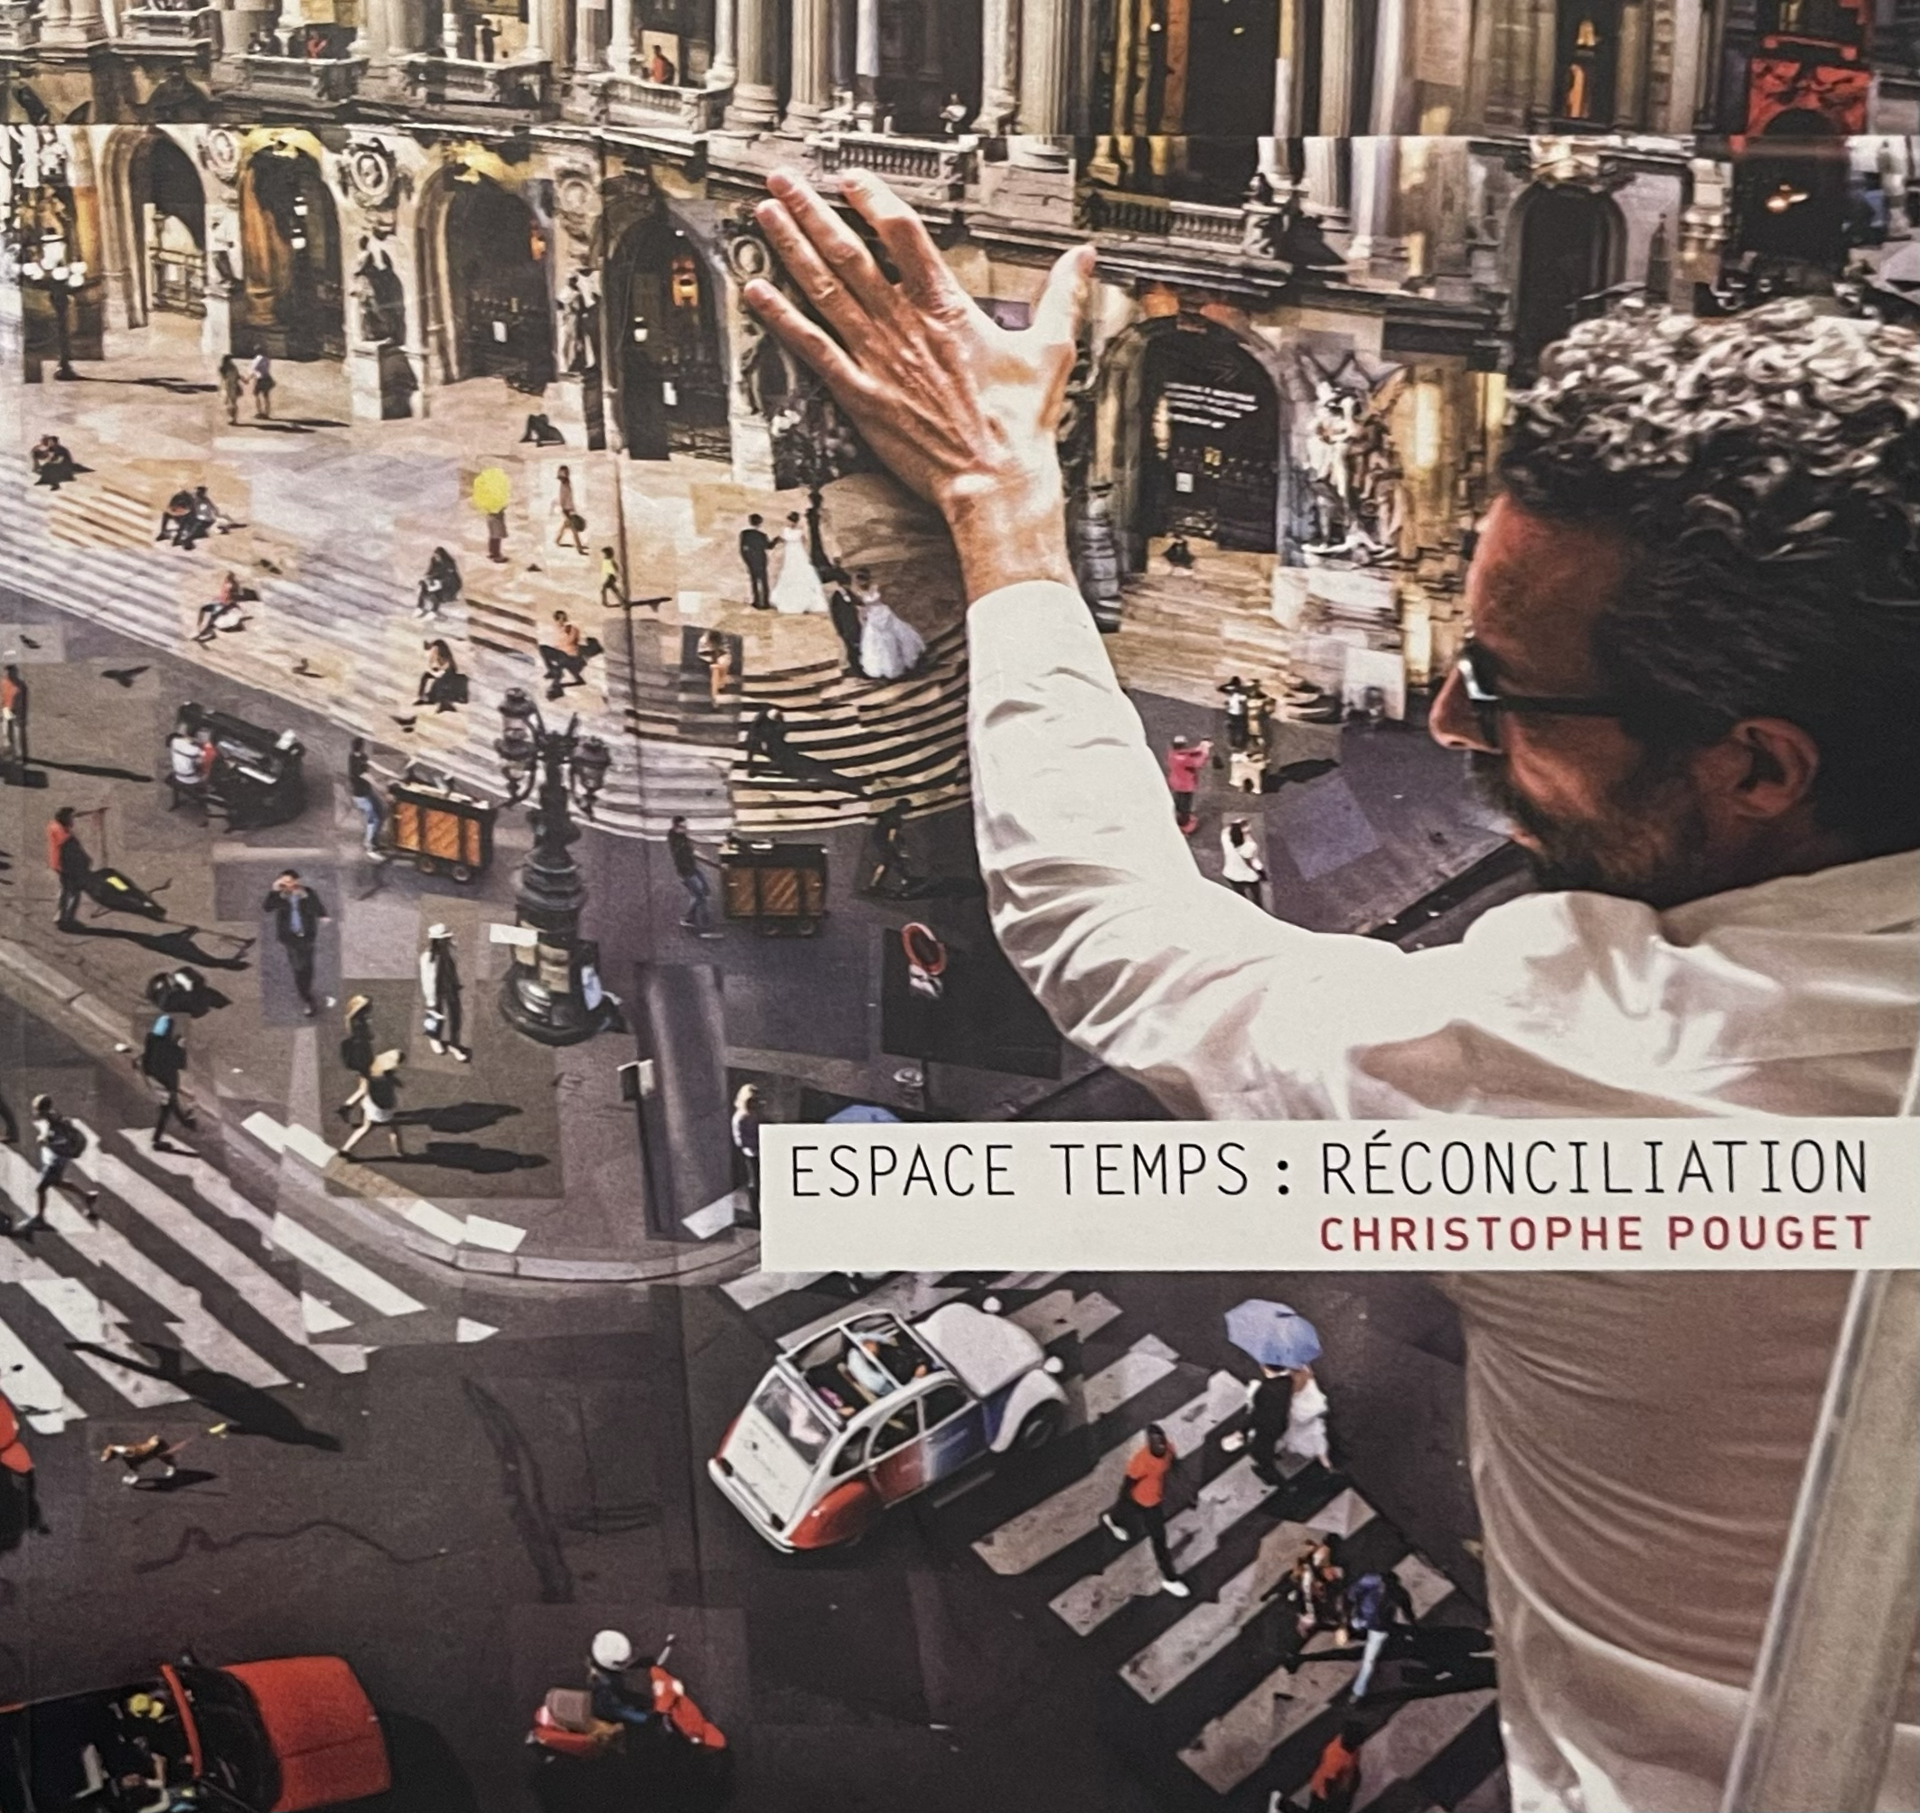 Escape Temps: Reconciliation by Christophe Pouget